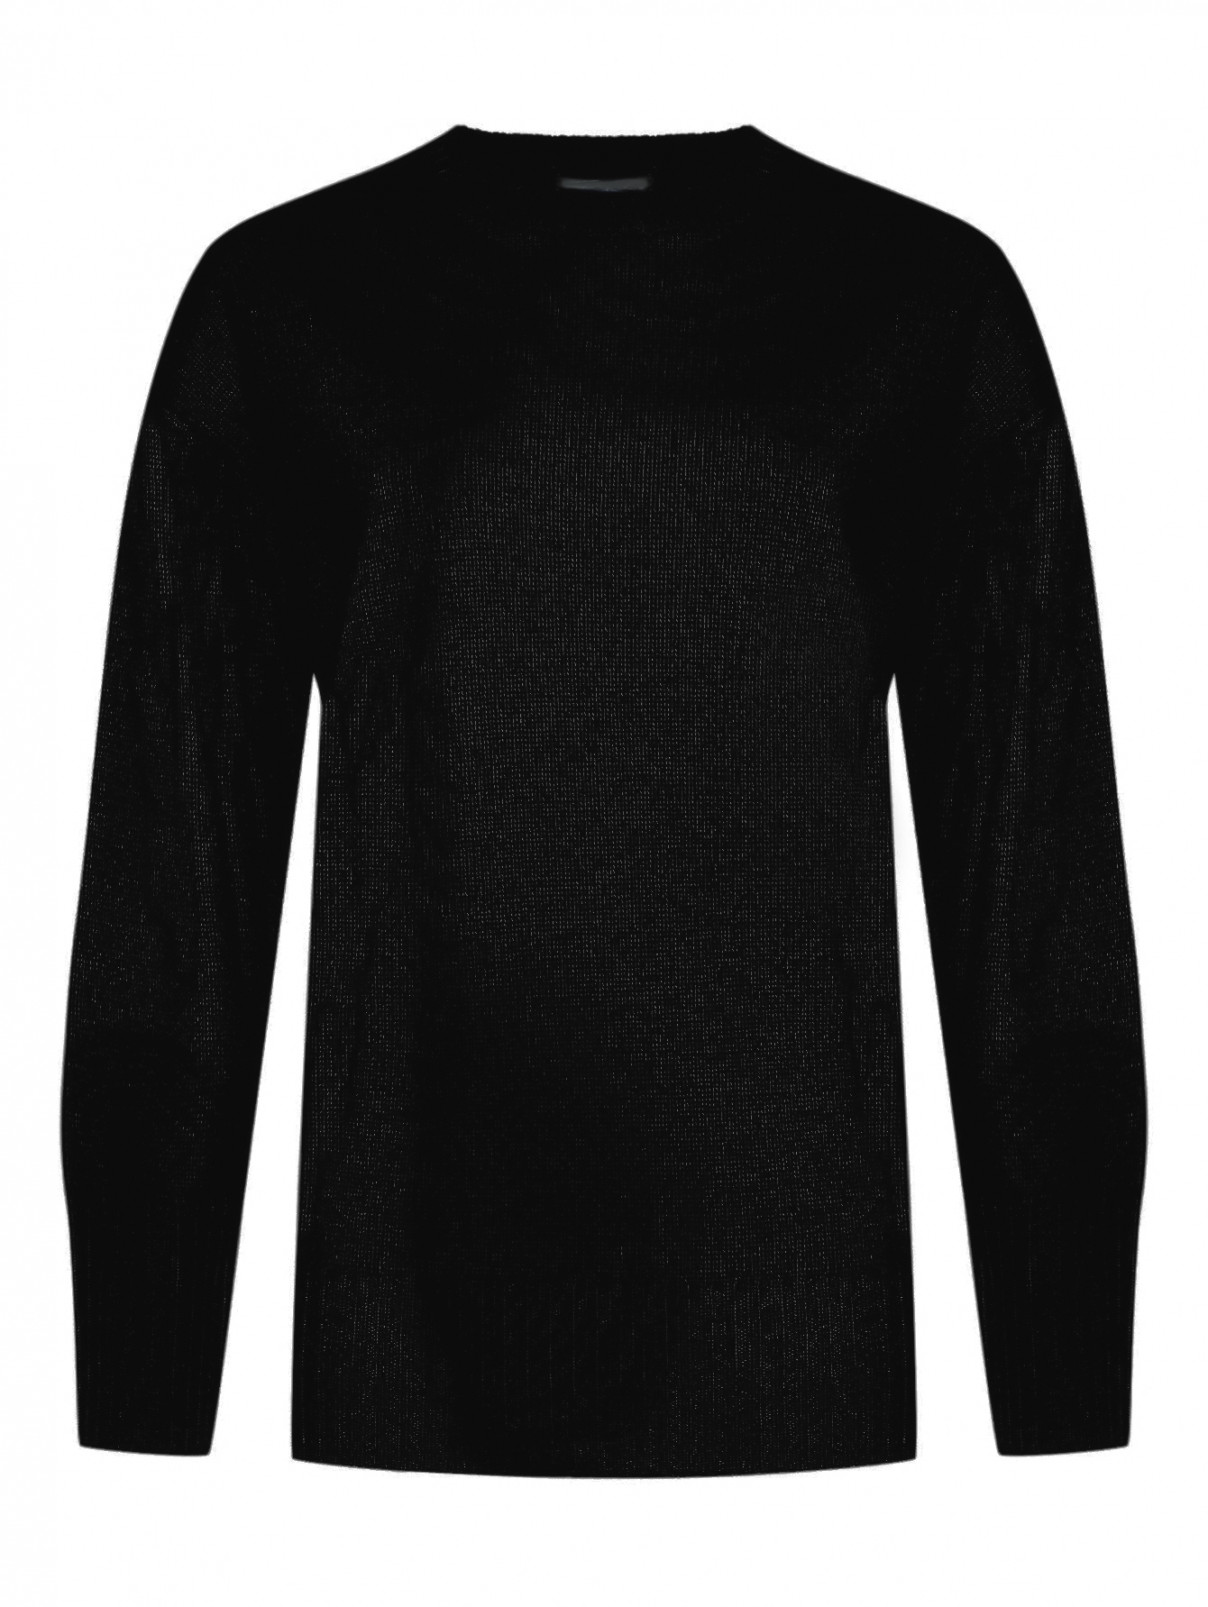 Джемпер из шерсти с круглым вырезом Shade  –  Общий вид  – Цвет:  Черный